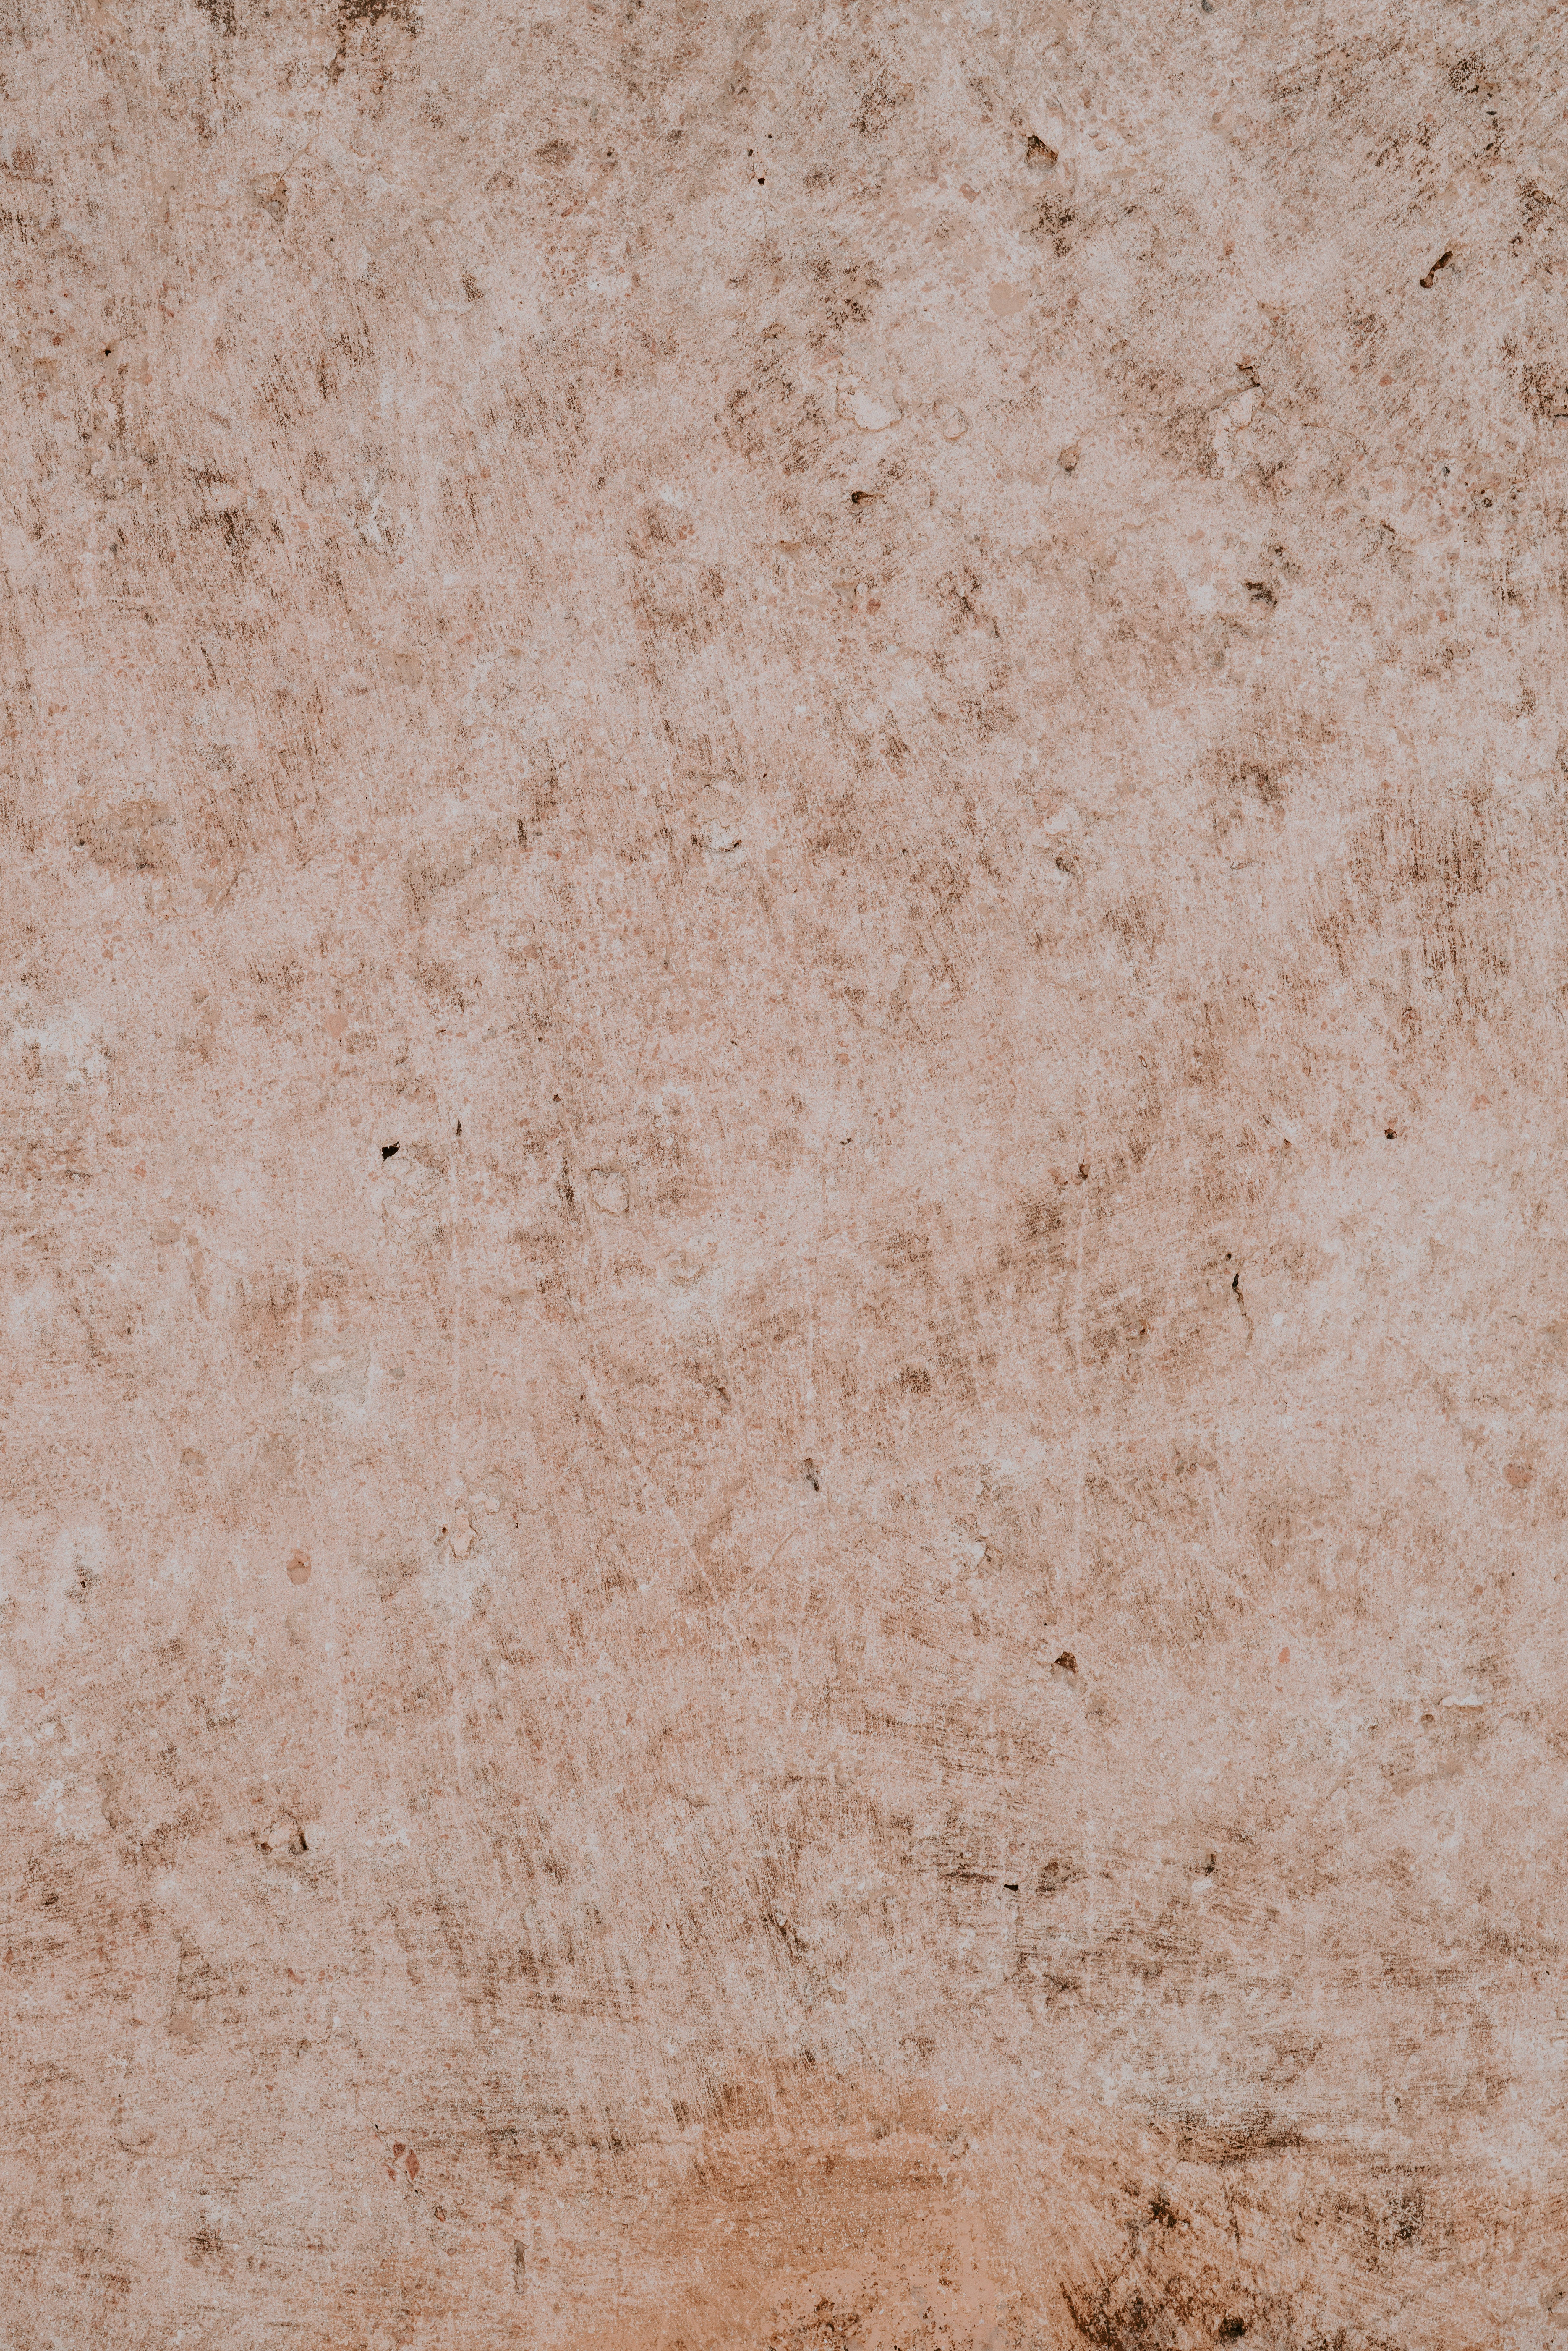 Sublime Elegance of Subtle Brown Marble in 4K Wallpaper